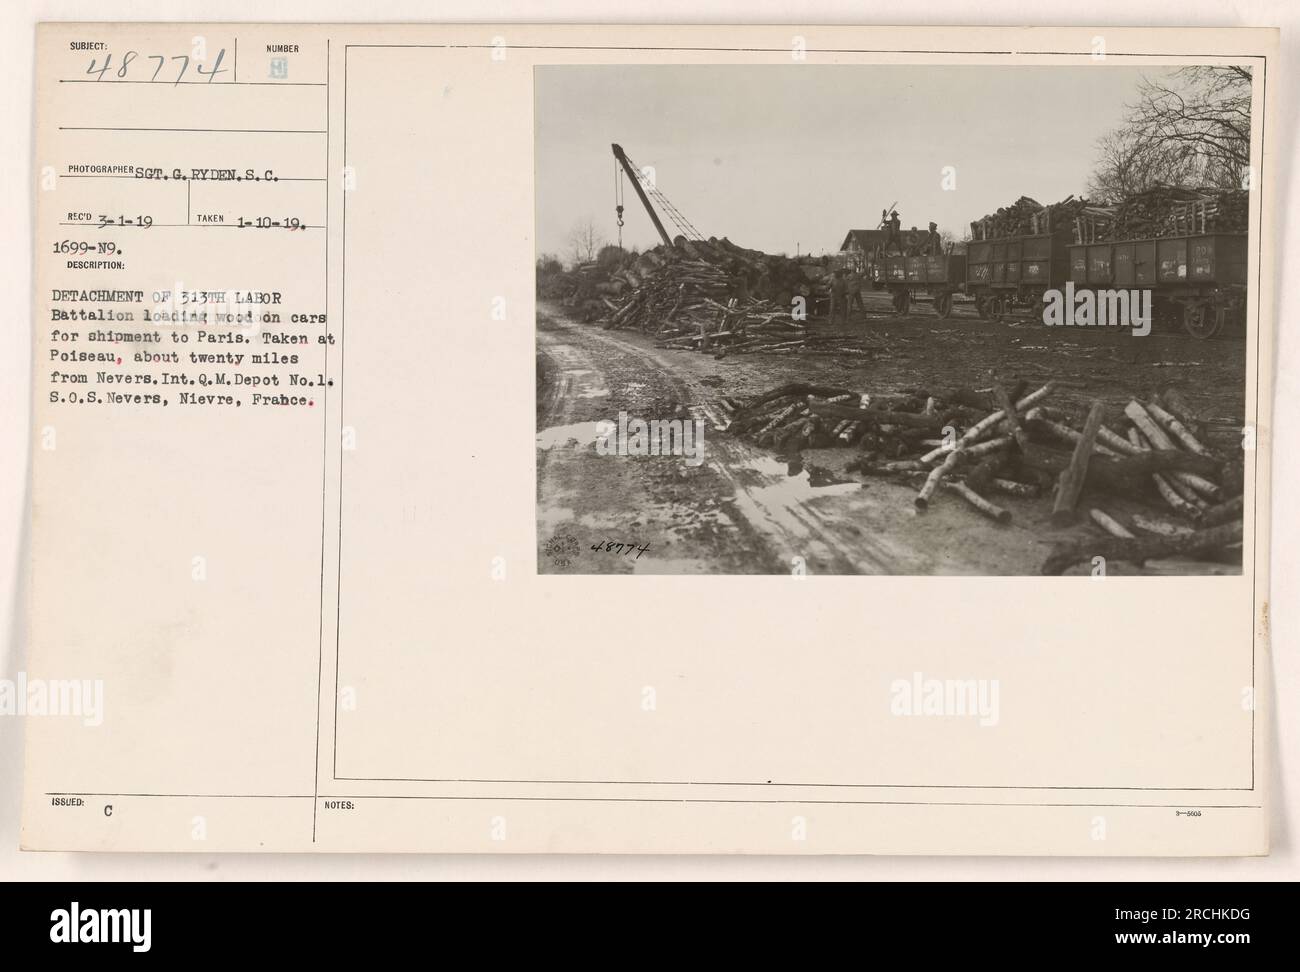 Einheit des 313. Arbeitsbataillons, das Holz auf Autos zur Lieferung nach Paris in Poiseau lädt, etwa 20 Meilen von Nevers entfernt. Das Foto wurde bei Int. Q. M. Depot No. 1 in S.O.S Nevers, Nievre, Frankreich. Fotografiert von Sergeant G. Ryden am 1. März 1919. Stockfoto